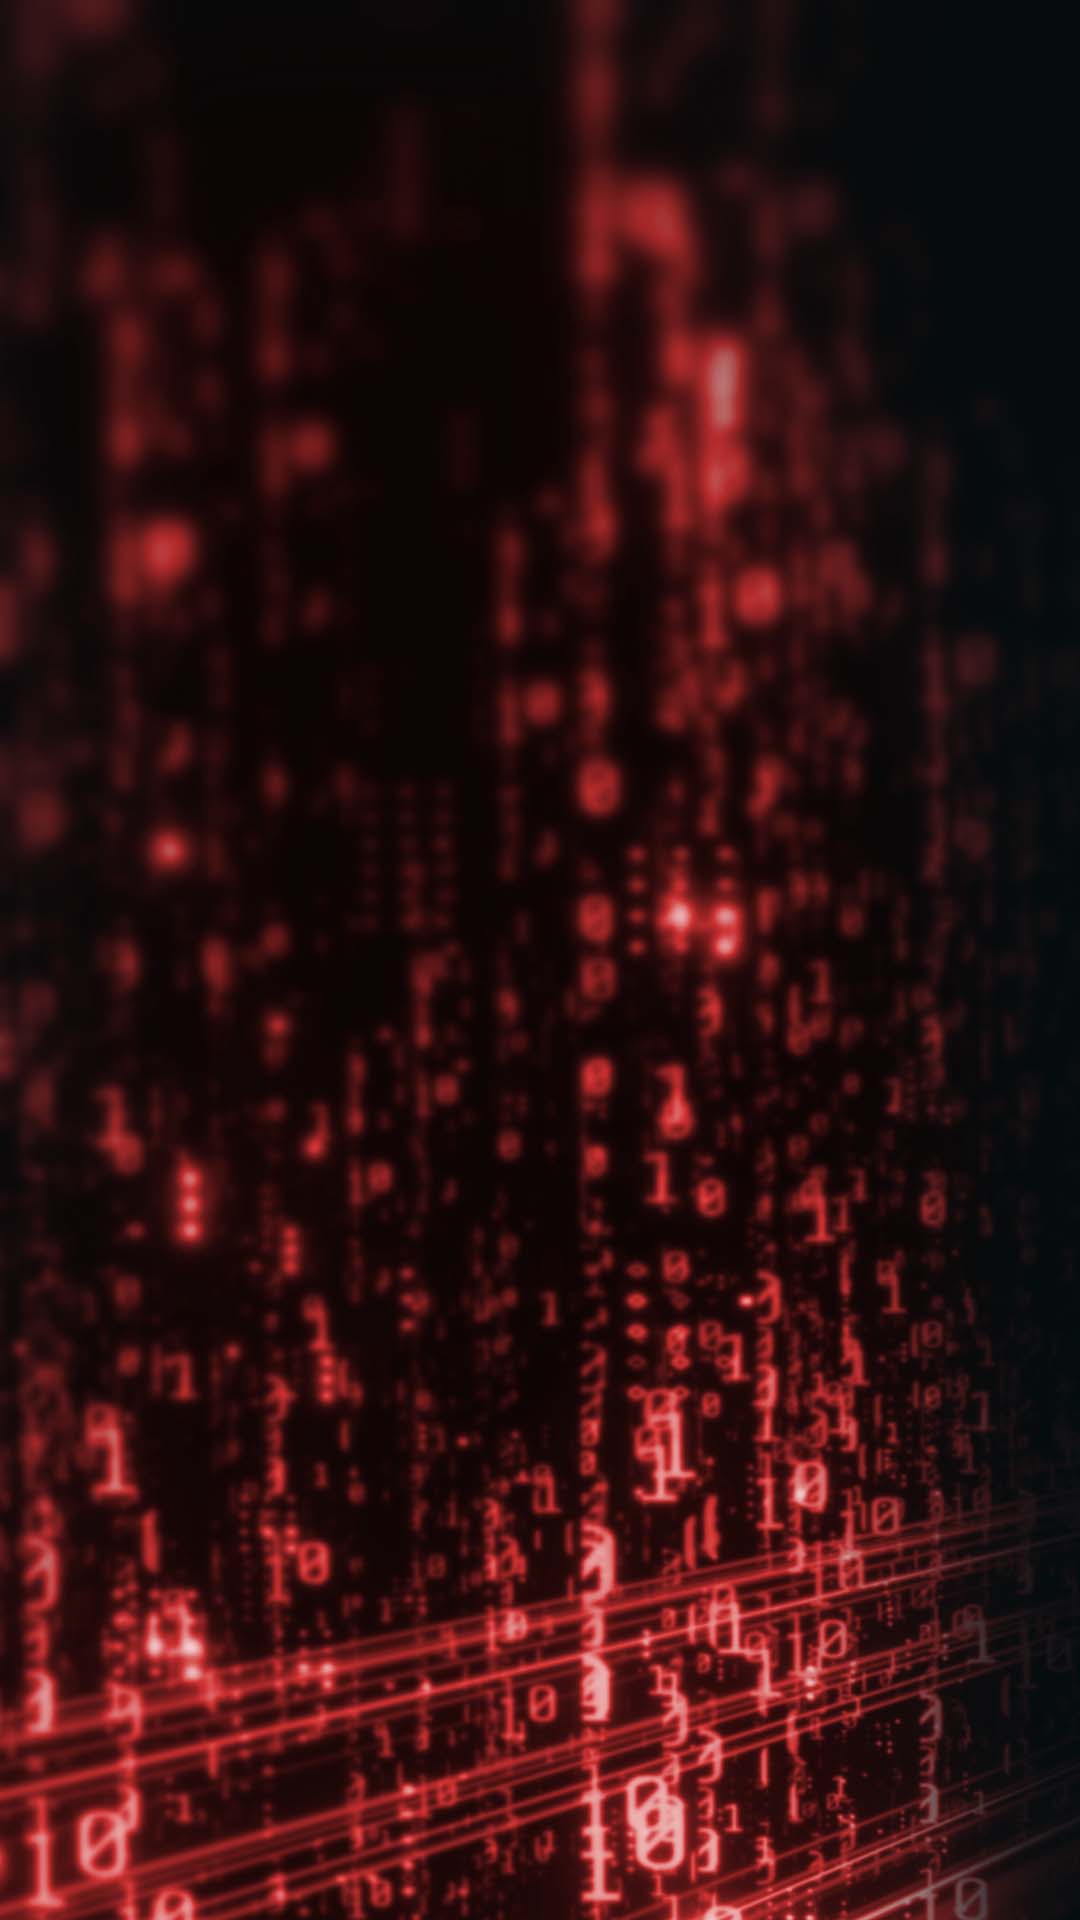 Data fading into the dark